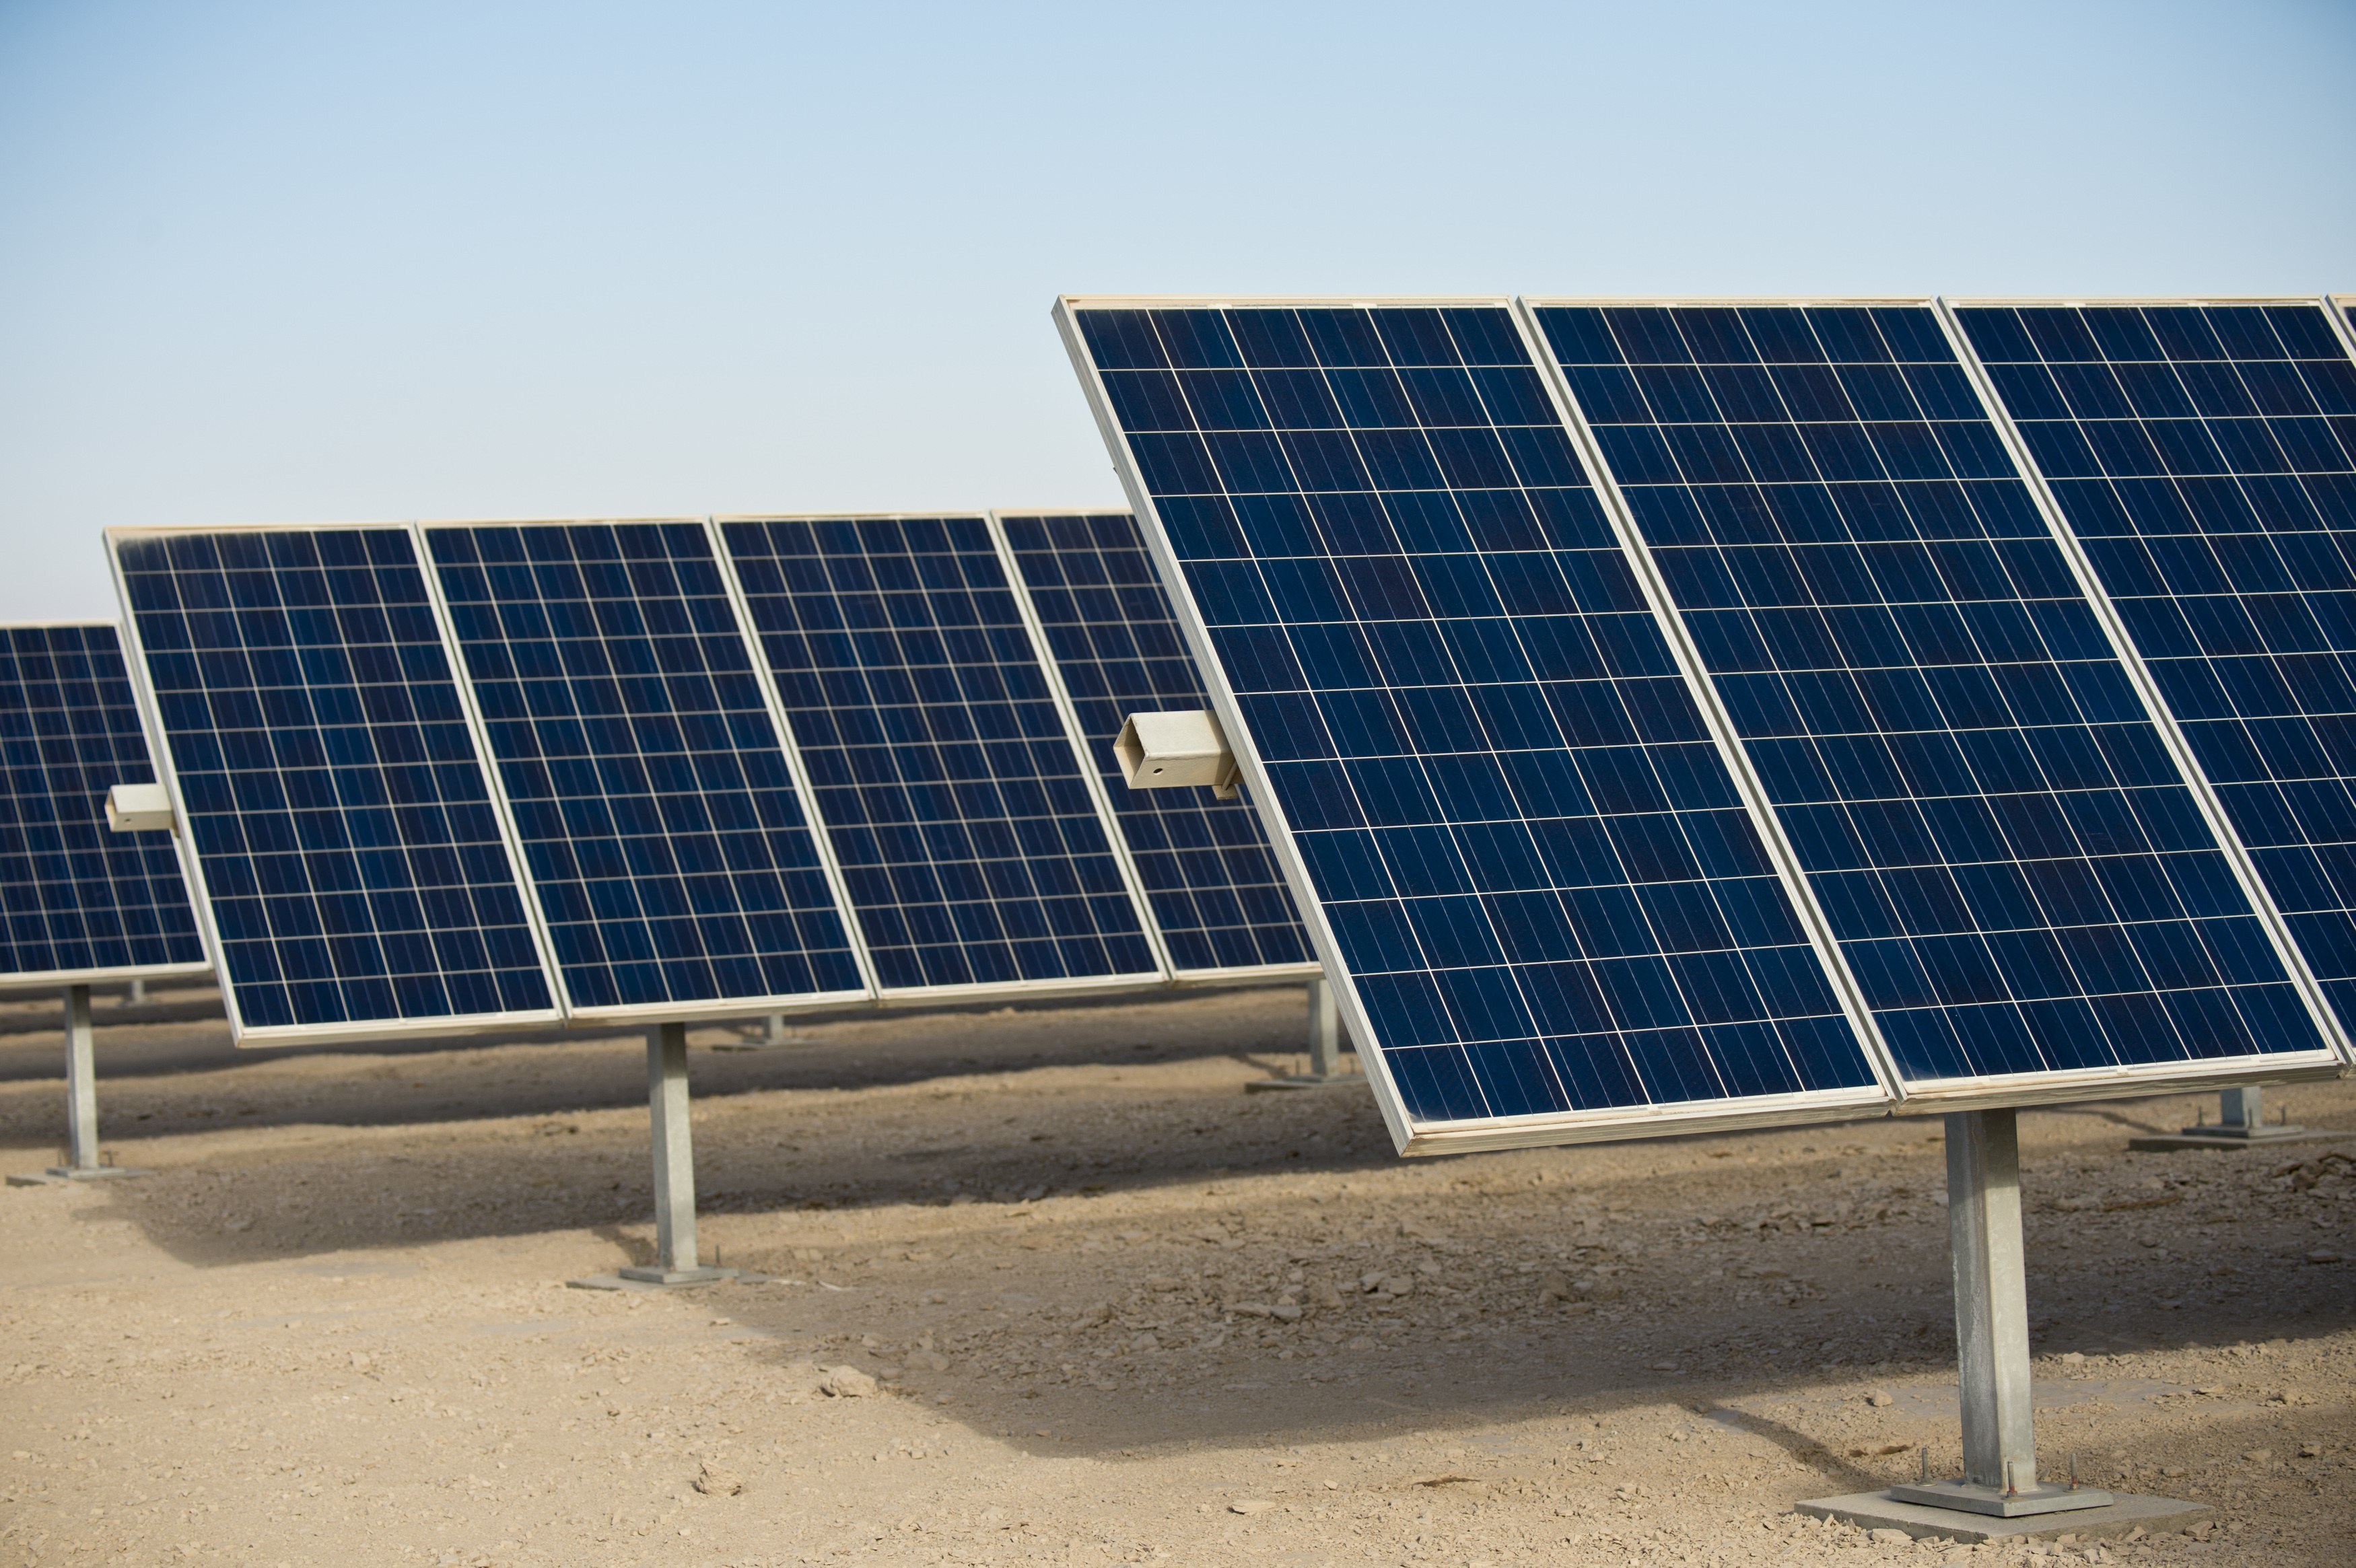 How Do Solar Panels Work? - NBC News